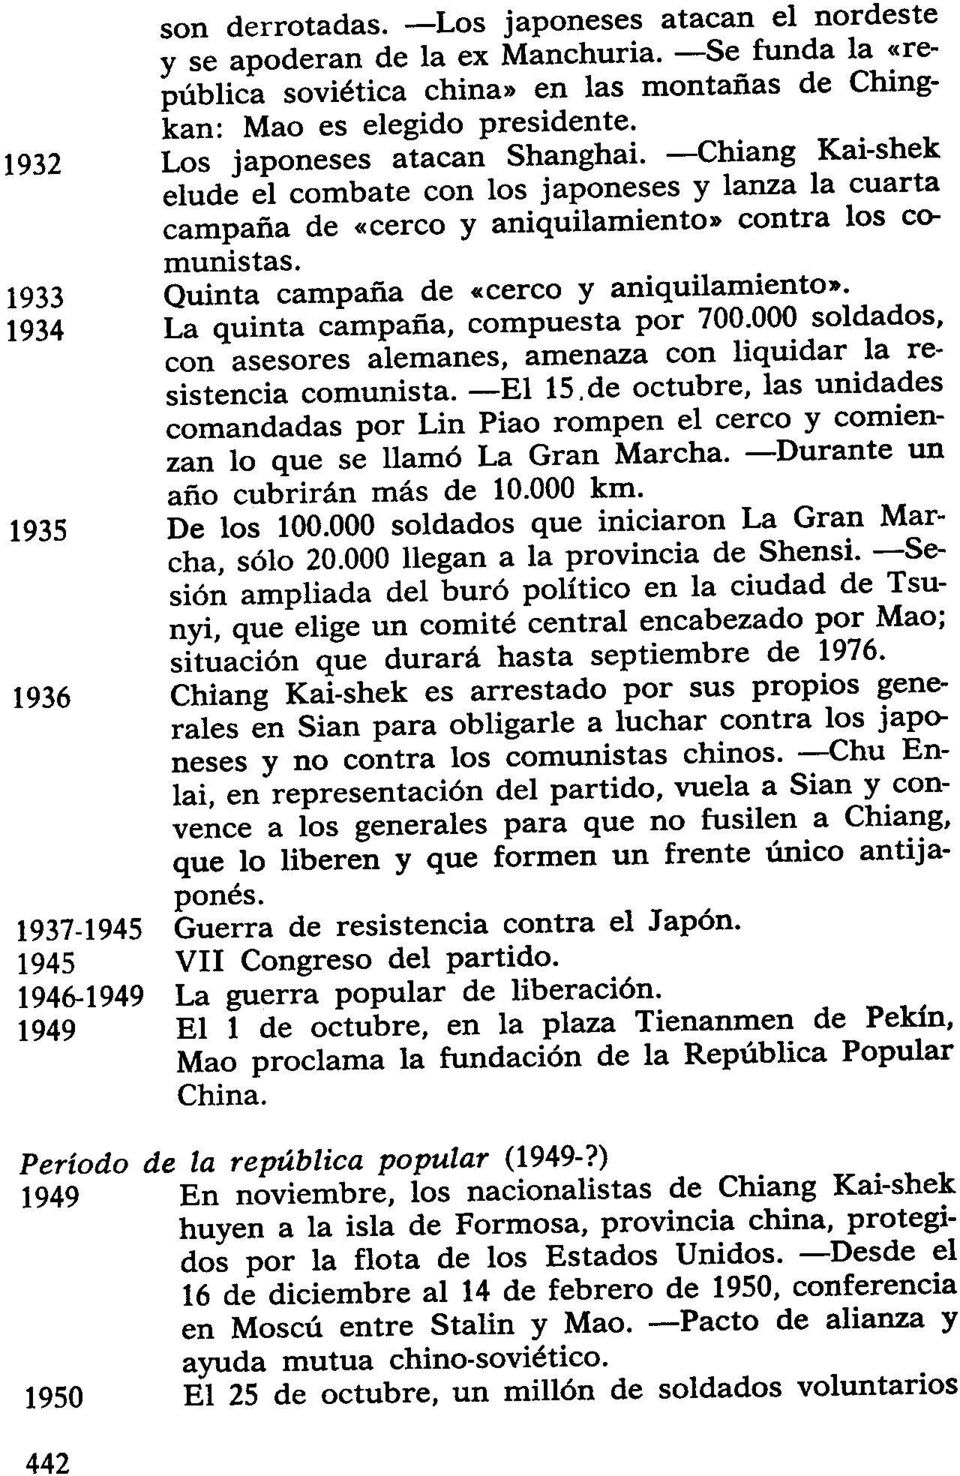 -Chiang Kai-shek elude el combate con los japoneses y lanza la cuarta campaña de «cerco y aniquilamiento» contra los comunistas. Quinta campaña de «cerco y aniquilamiento».